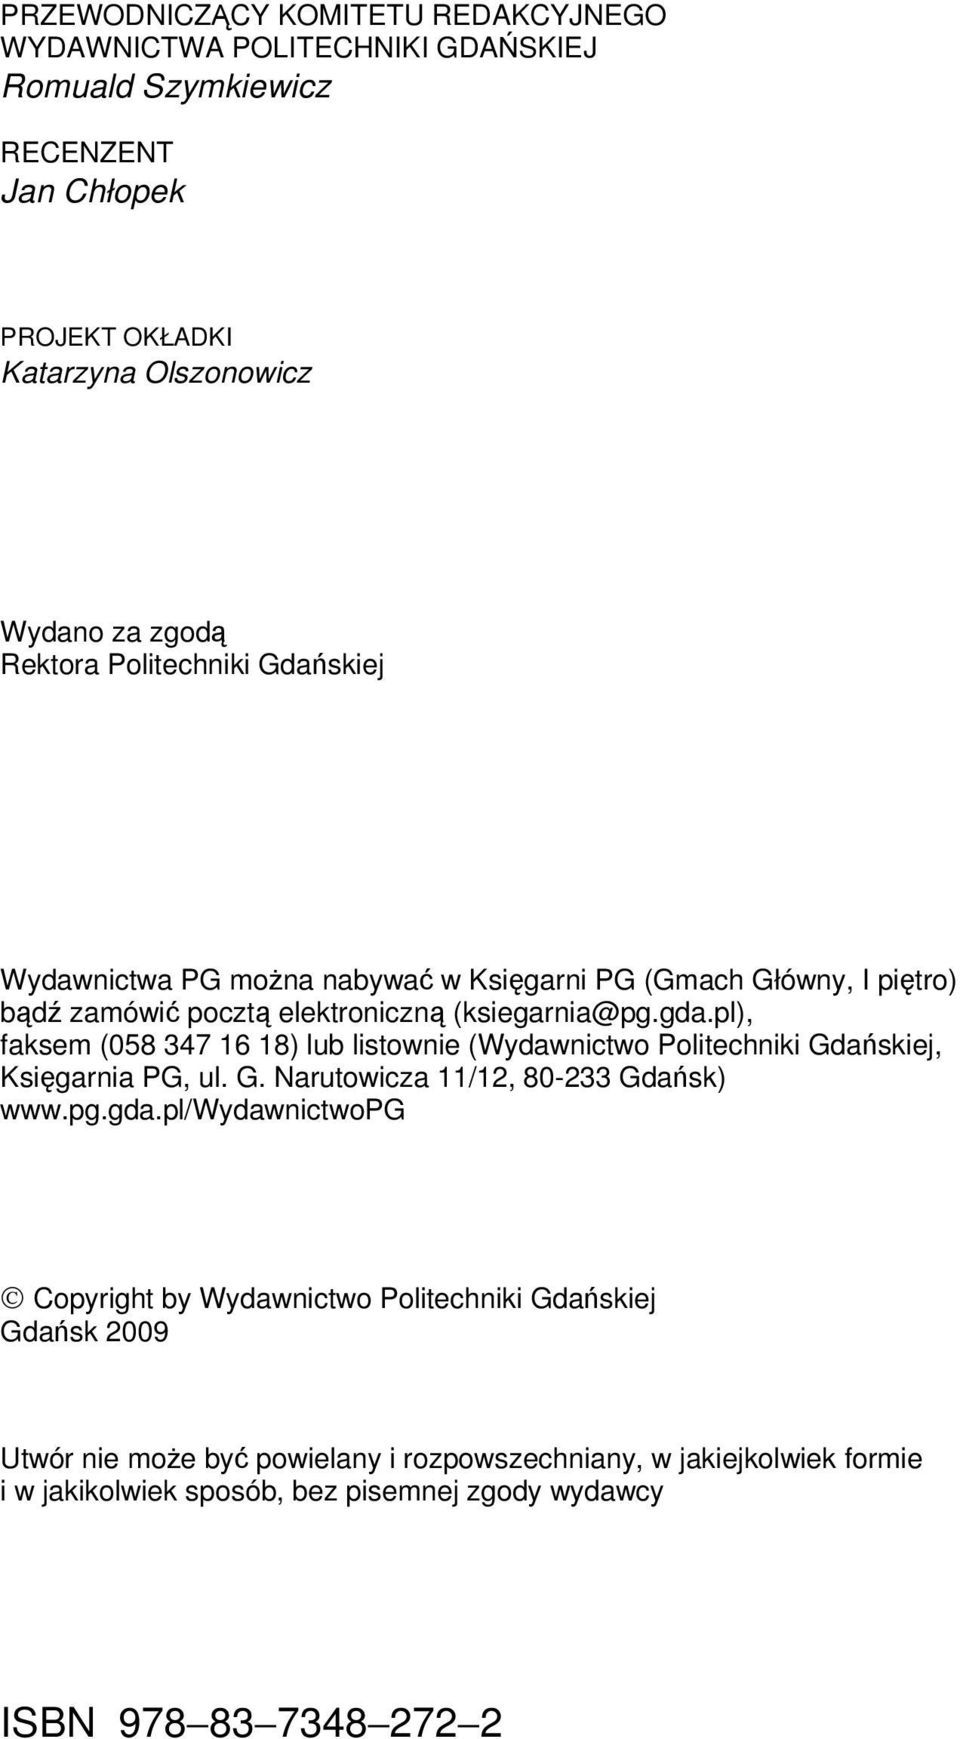 pl), faksem (058 347 16 18) lub listownie (Wydawnictwo Politechniki Gdańskiej, Księgarnia PG, ul. G. Narutowicza 11/12, 80-233 Gdańsk) www.pg.gda.